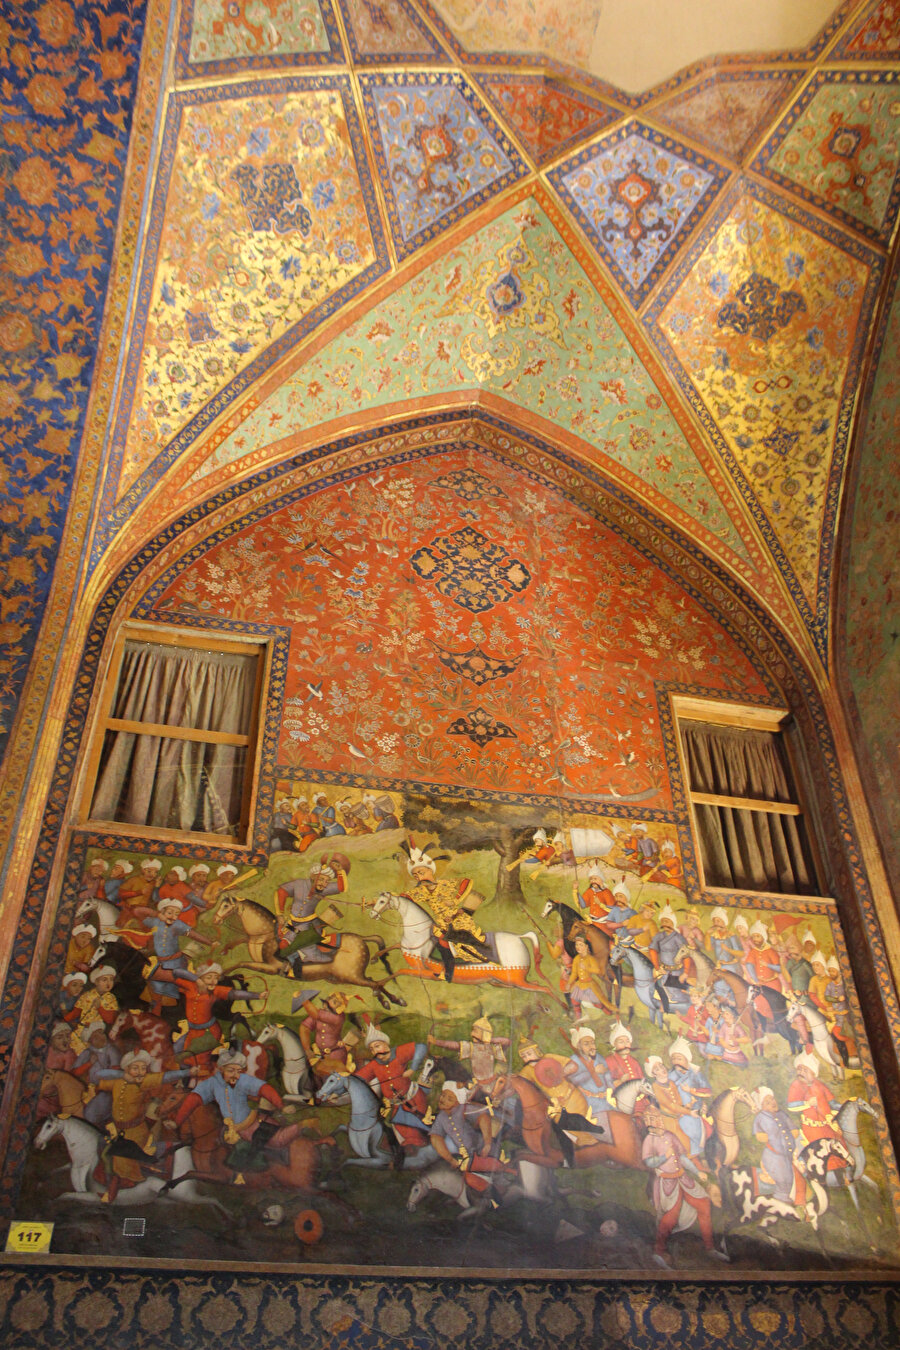 Safevî mimarisinin önemli örneklerinden İsfehan Çihelsütûn Sarayı’nda yer alan ve Şah İsmail’in Özbek Hanı Şeybânî ile olan savaşını gösteren bir tasvir. (Fotoğraf: Yusuf Sami Kamadan)